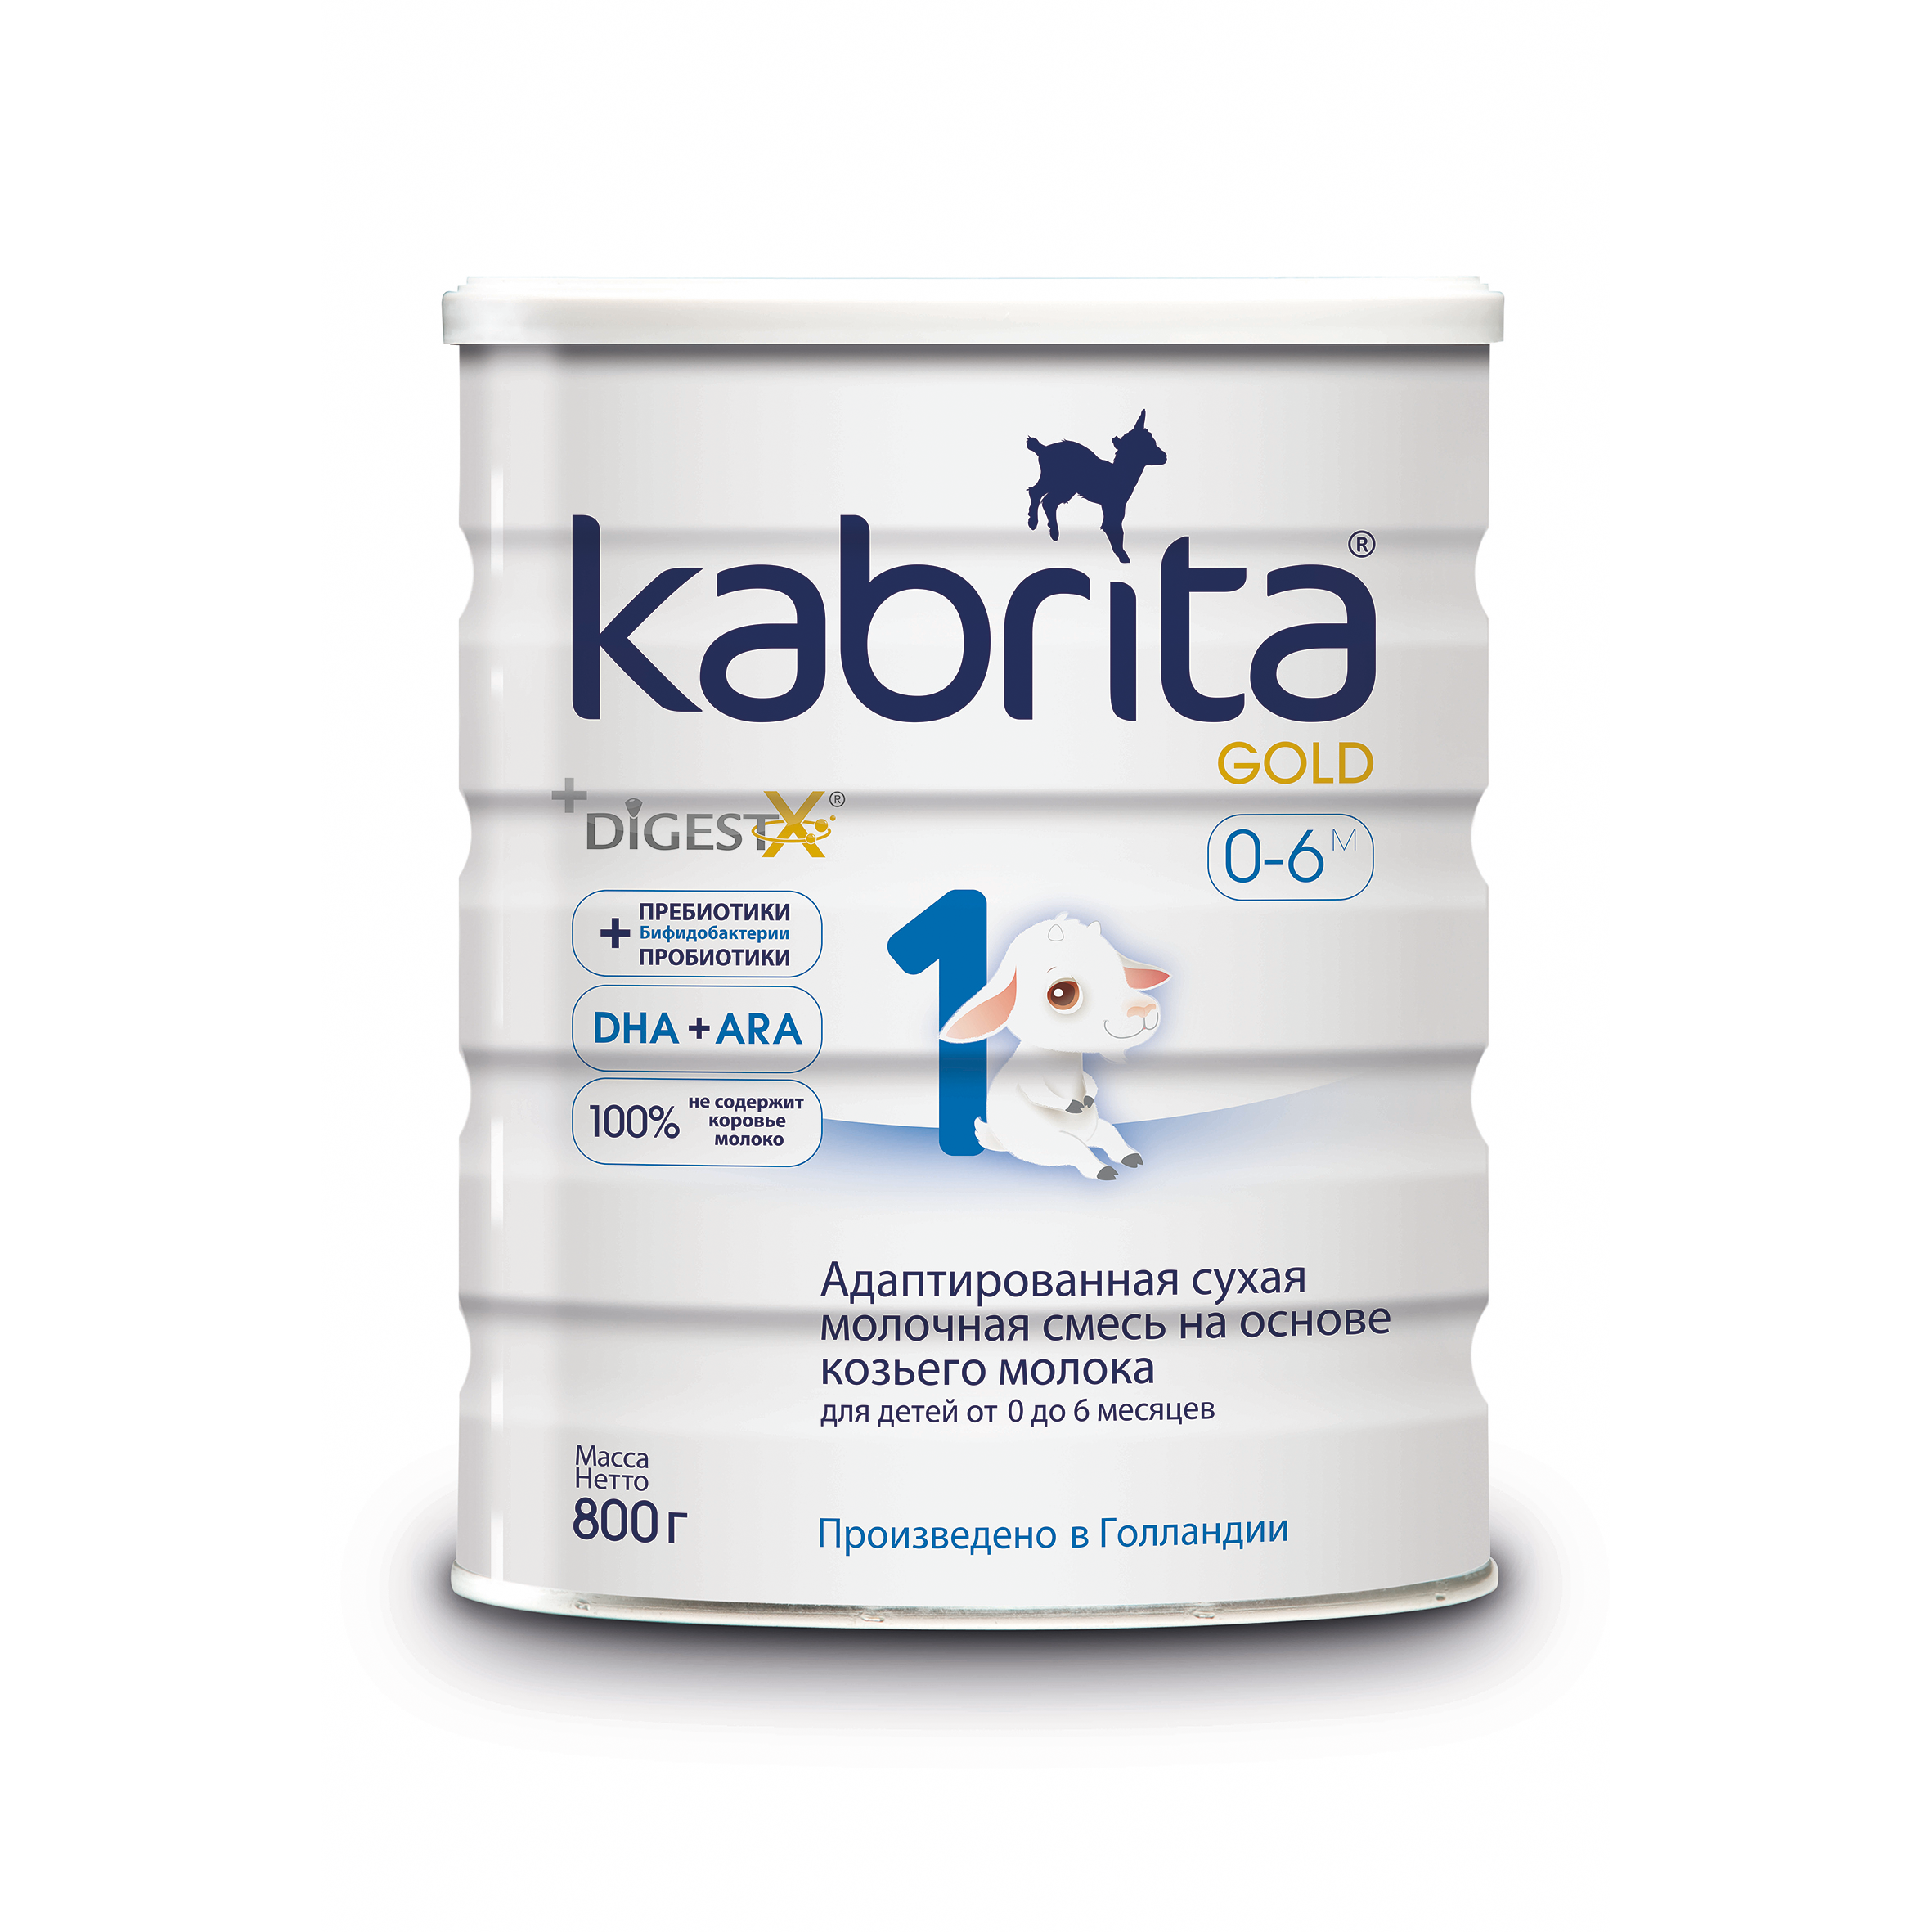 Смесь на основе козьего молока Kabrita Gold от 0 до 6 мес. 800 г смесь на основе козьего молока бибиколь нэнни 4 от 18 мес 800 г